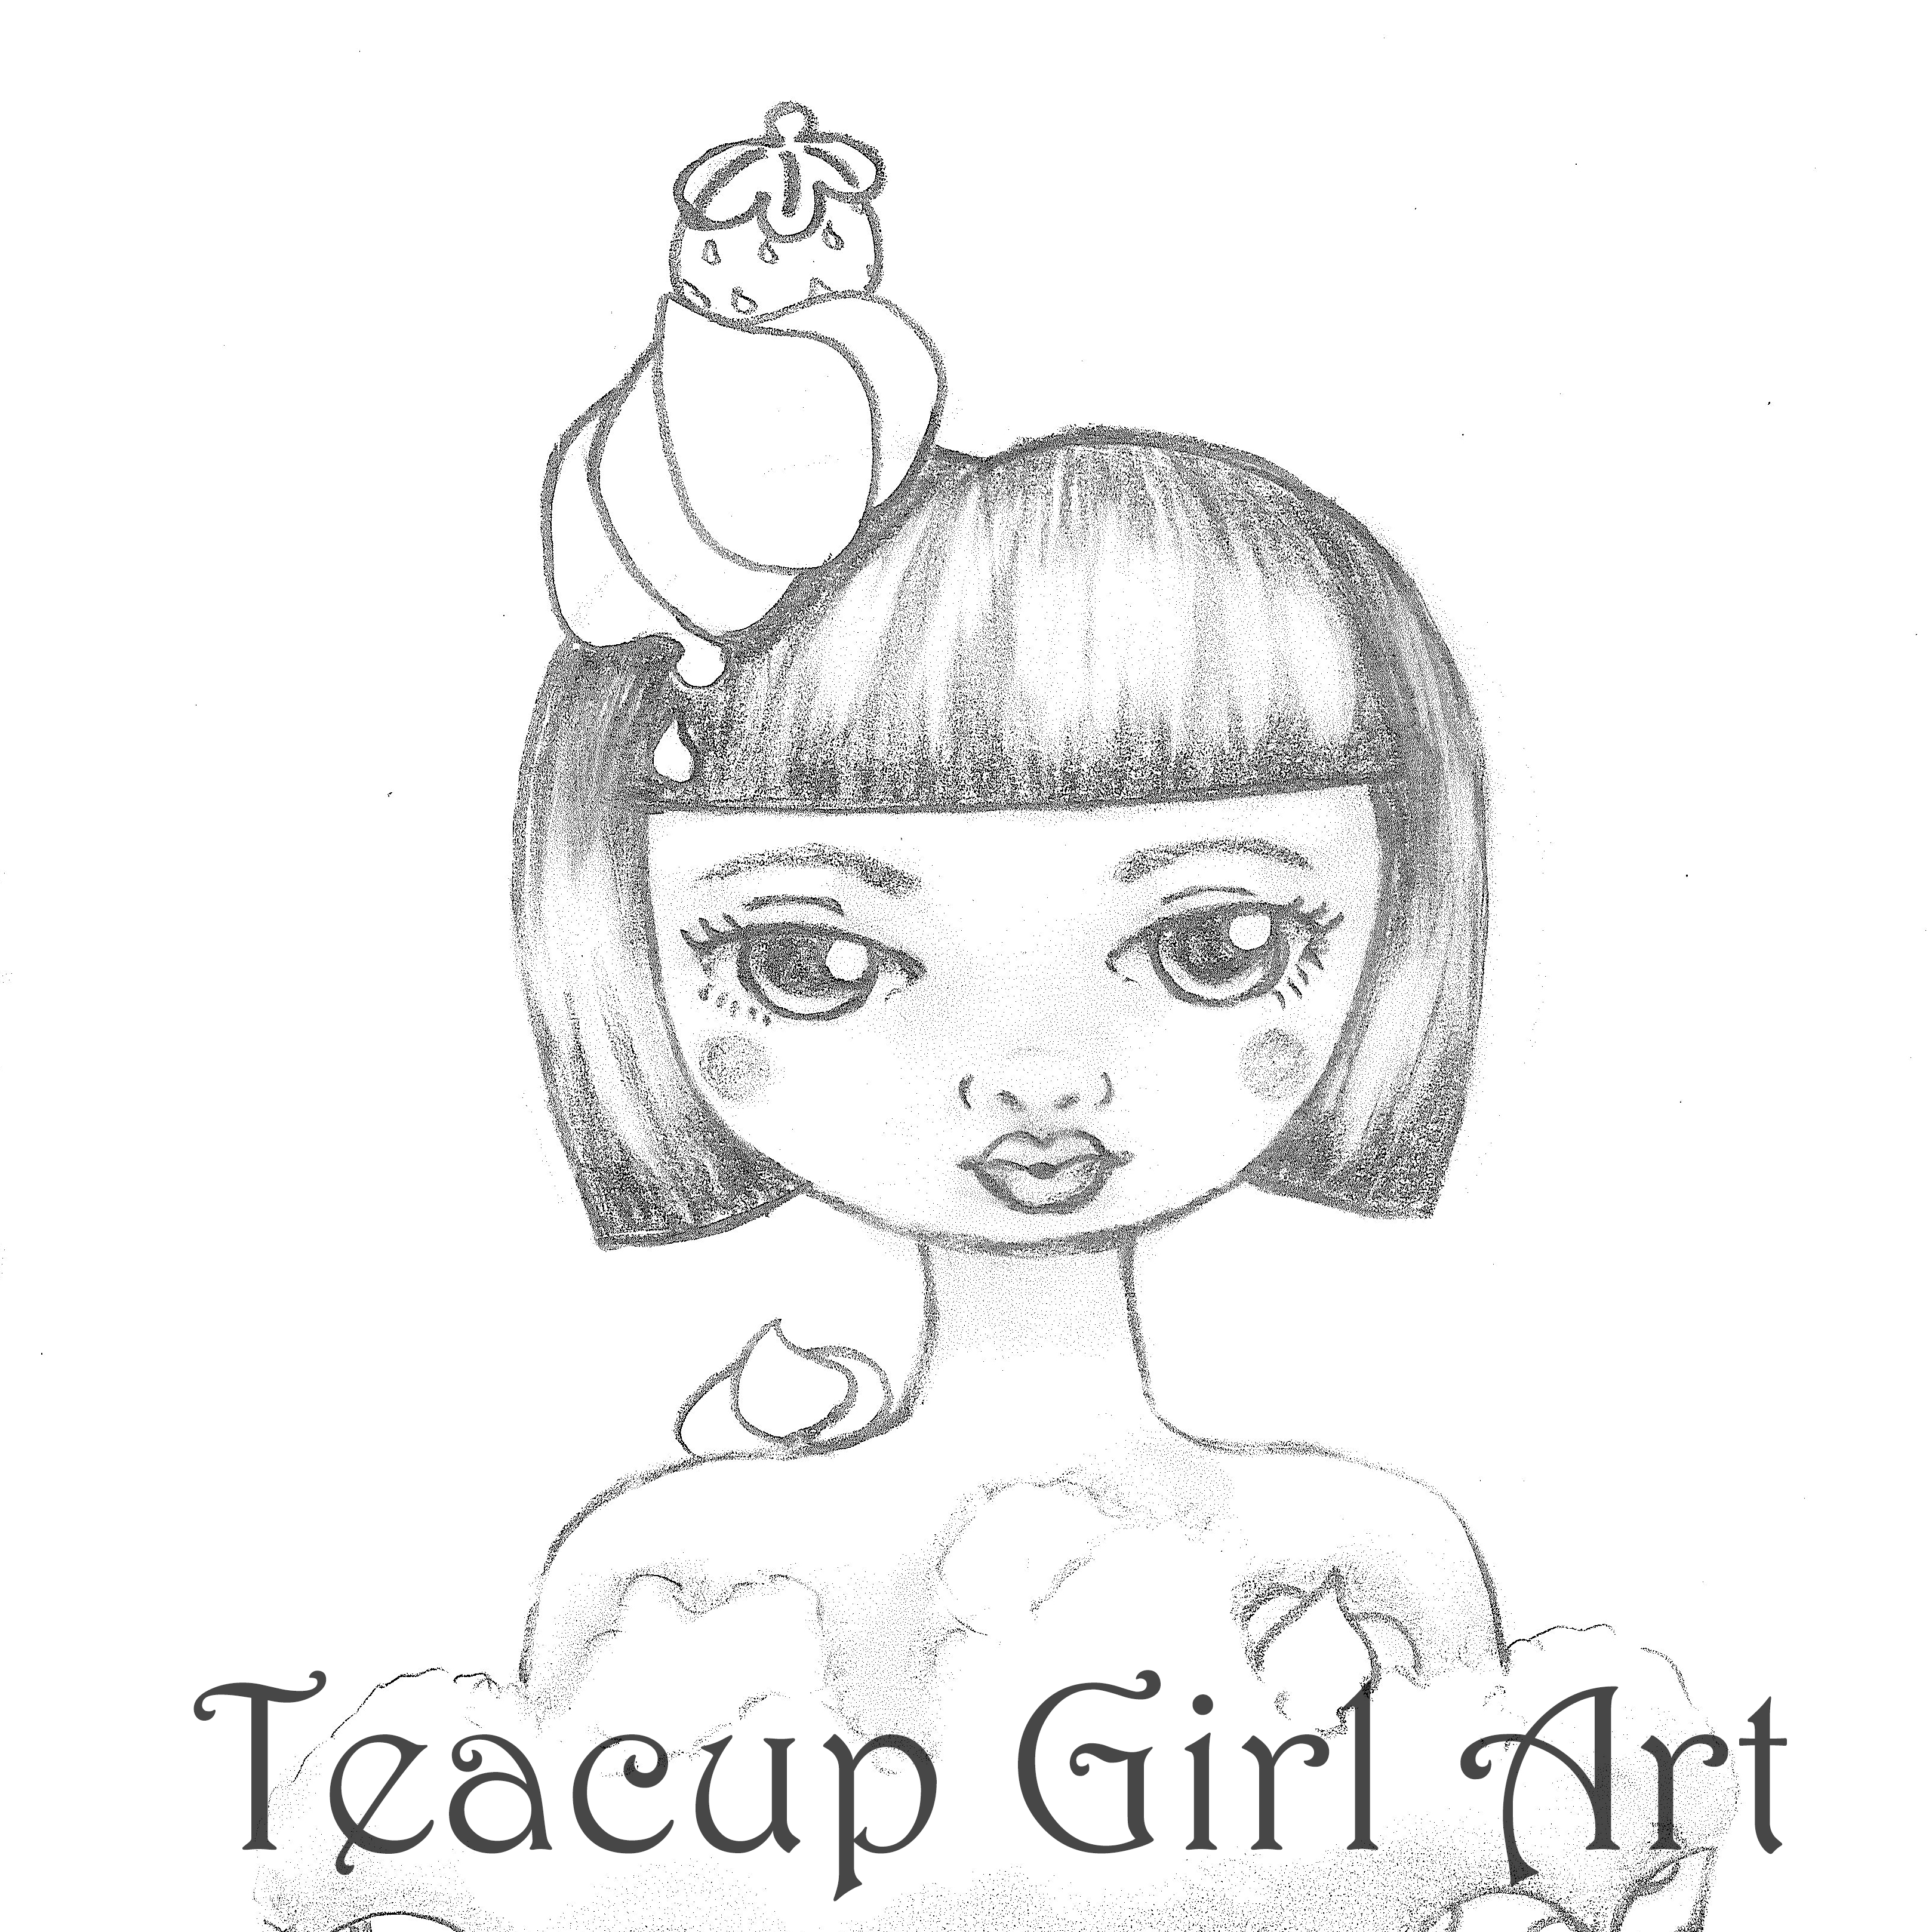 Teacup Girl Art